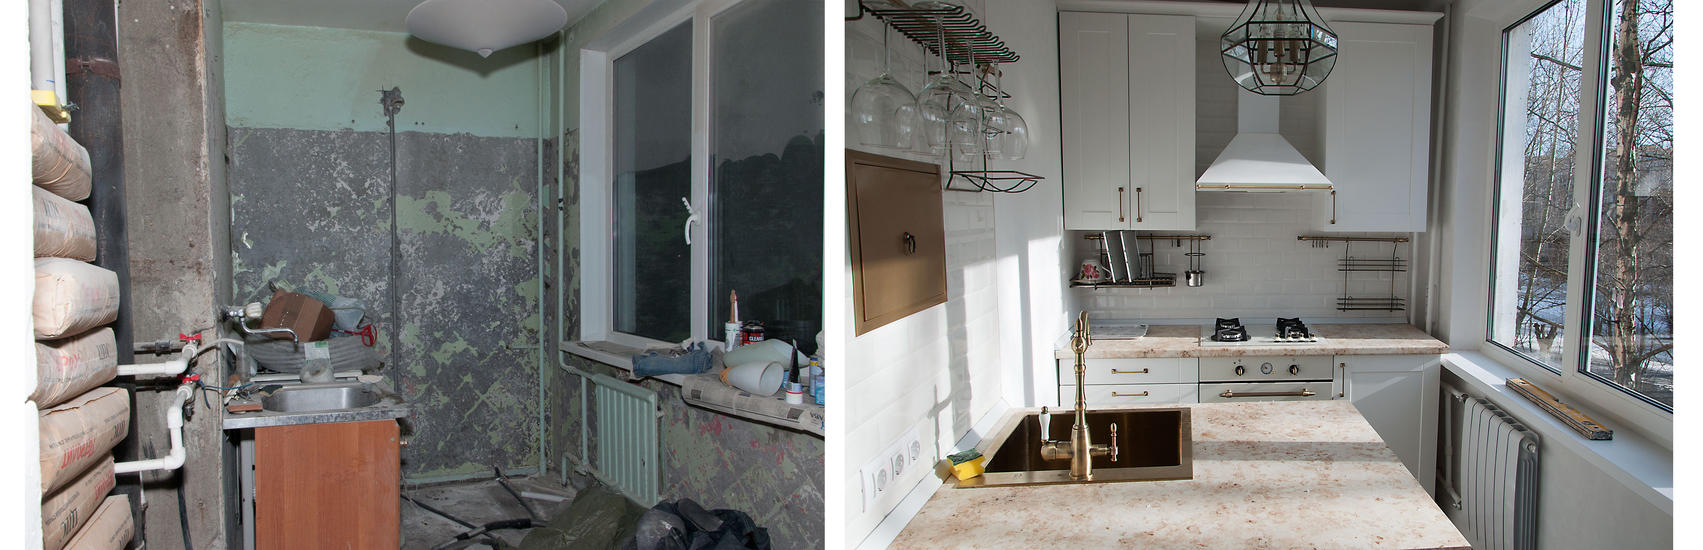 Семья беловых решила сделать ремонт на кухне. Ремонт кухни до и после. Кухня после ремонта. Квартира в хрущевке до ремонта. Ремонт до и после фото.